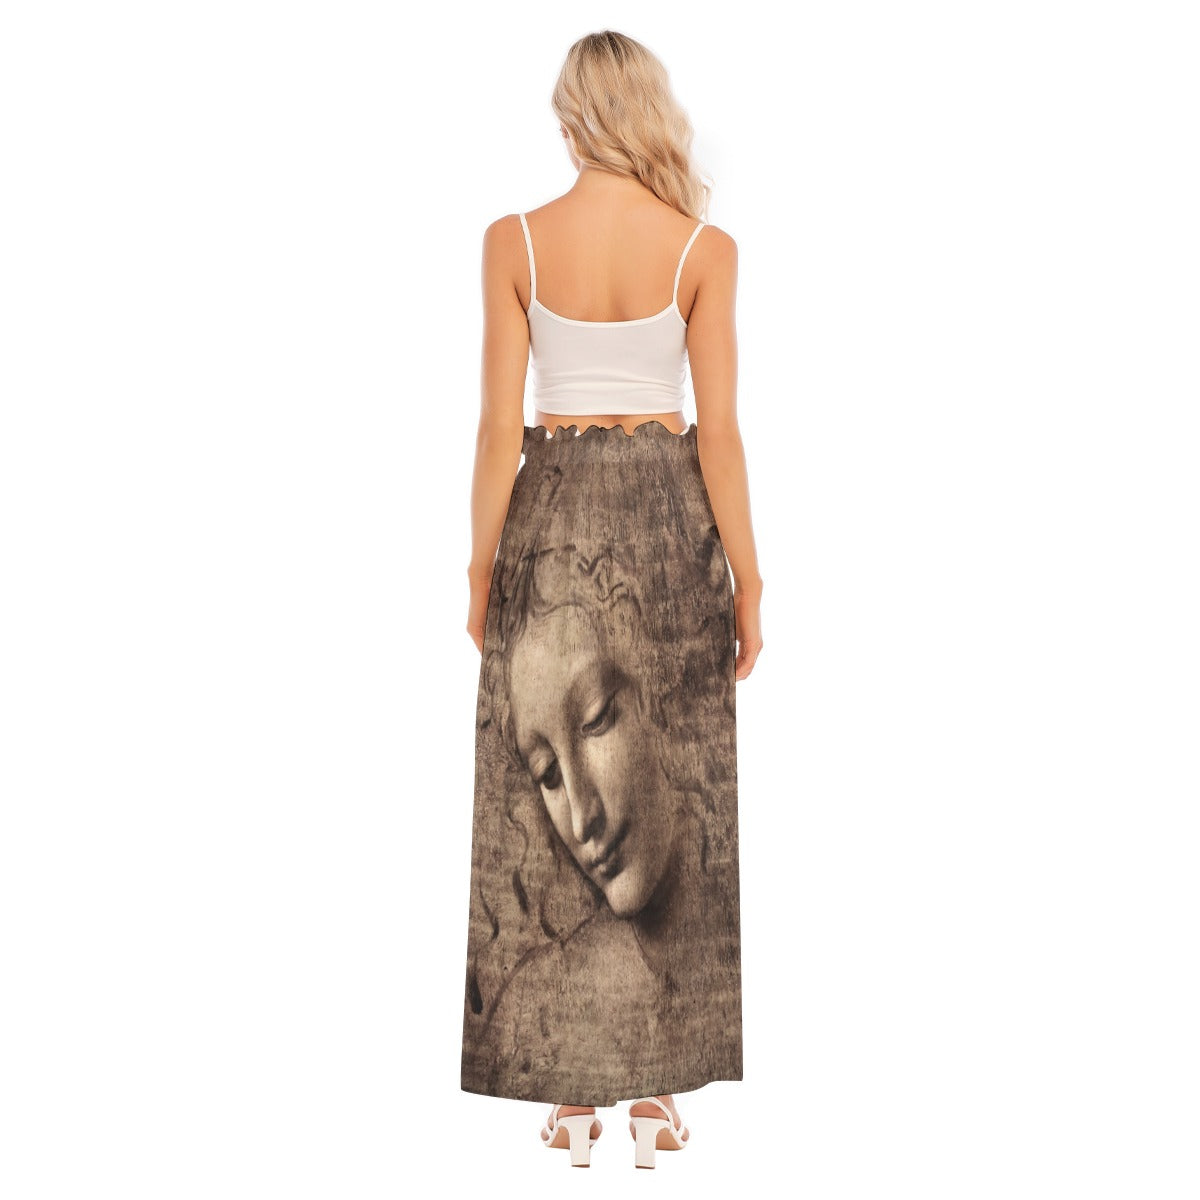 Da Vinci Inspired Split Skirt - Side View